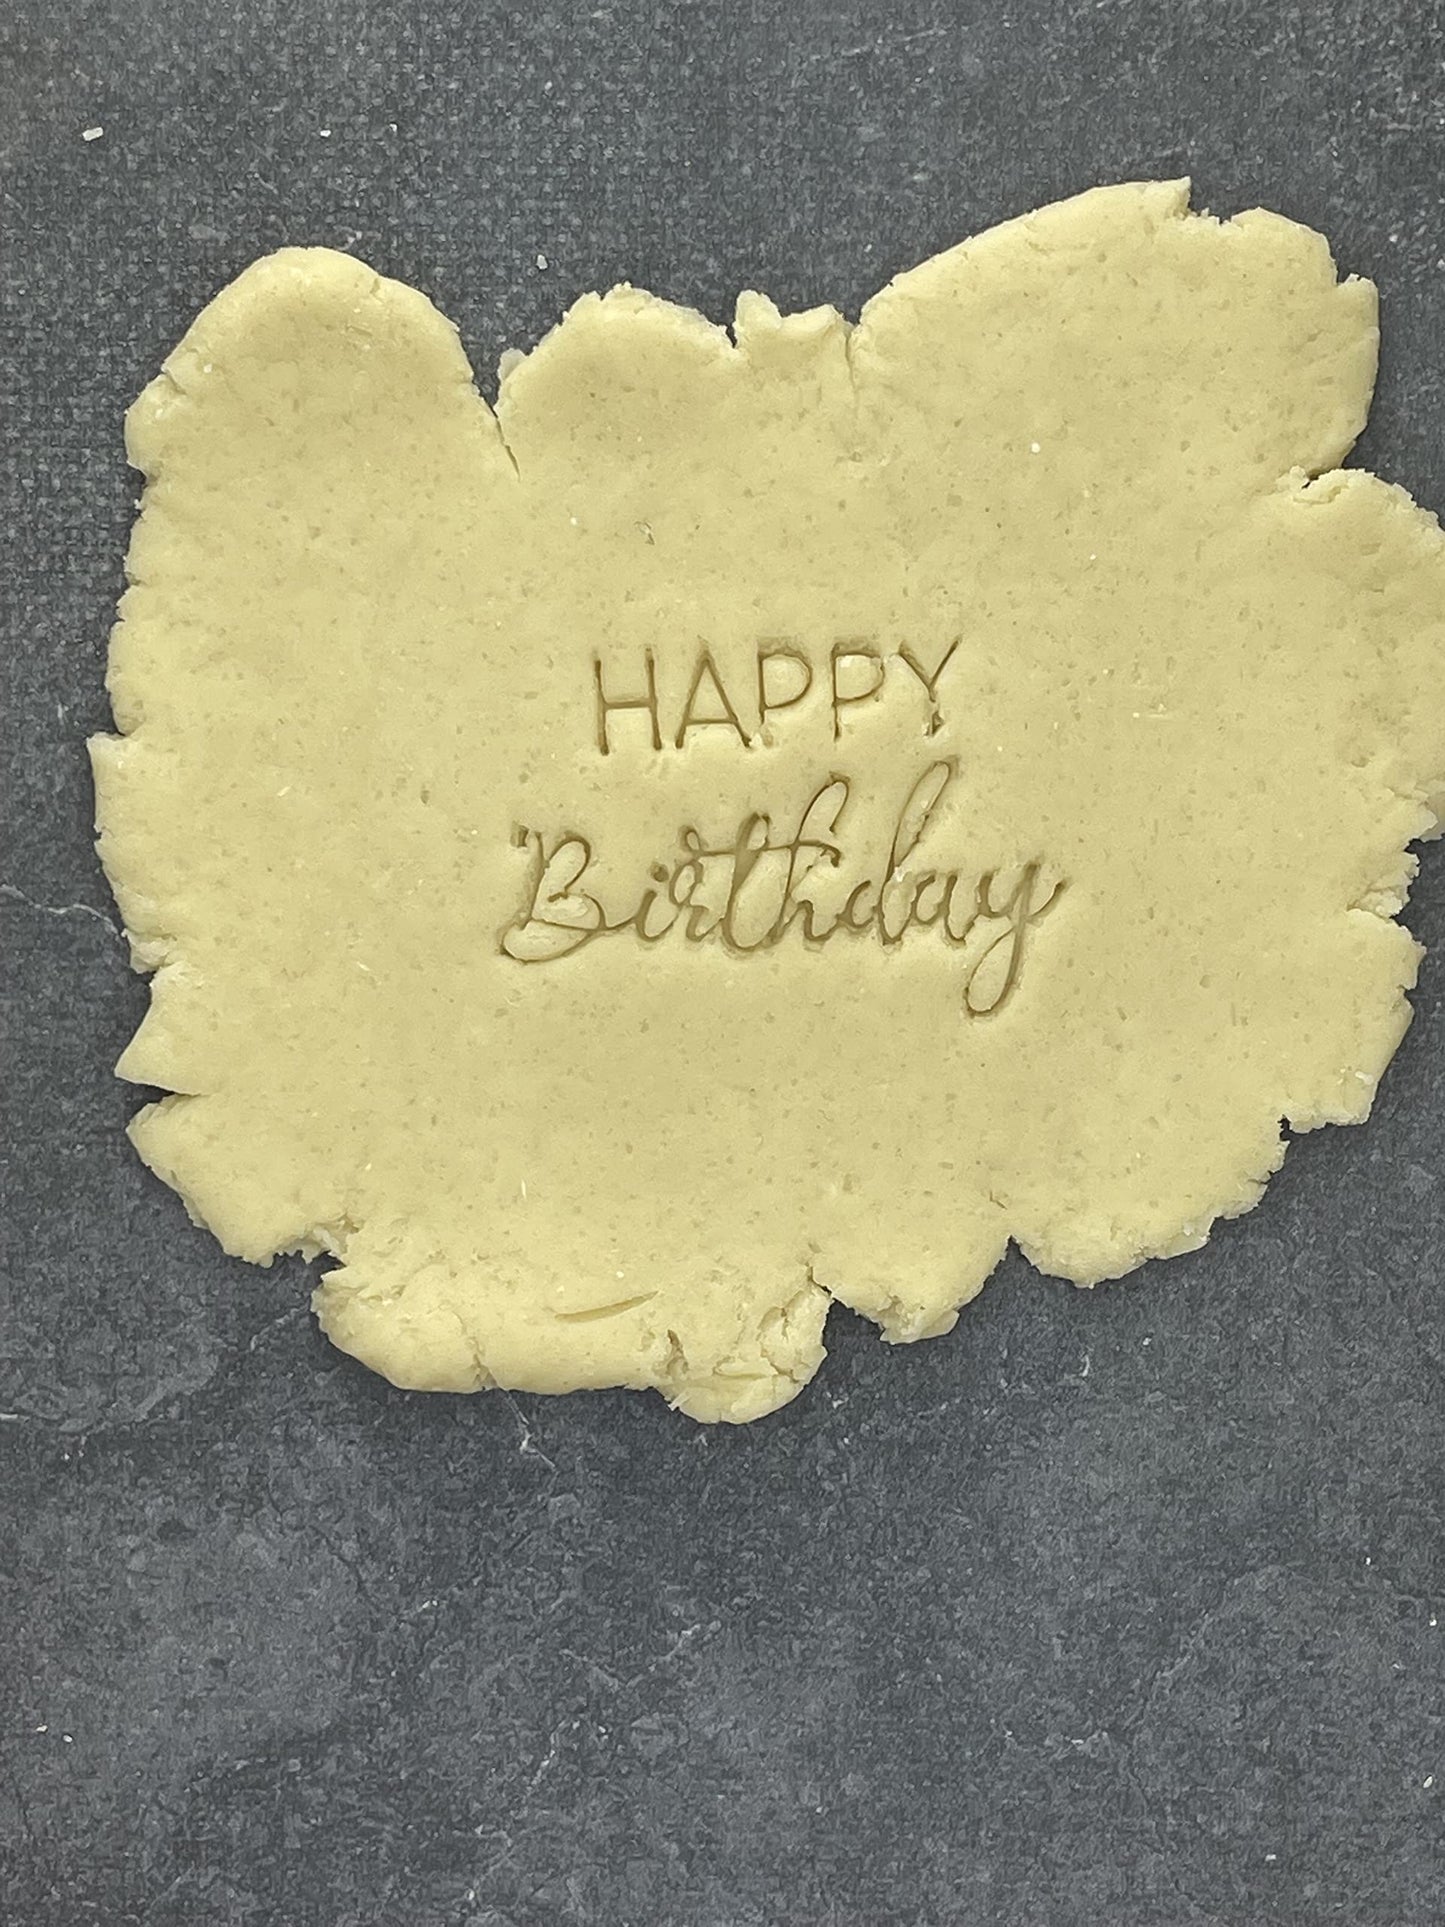 Tampon - Happy Birthday - Message - pour la réalisaton de biscuit sablé, patisserie, pate à sucre -Décoration gateau-Fait maison- ELACE